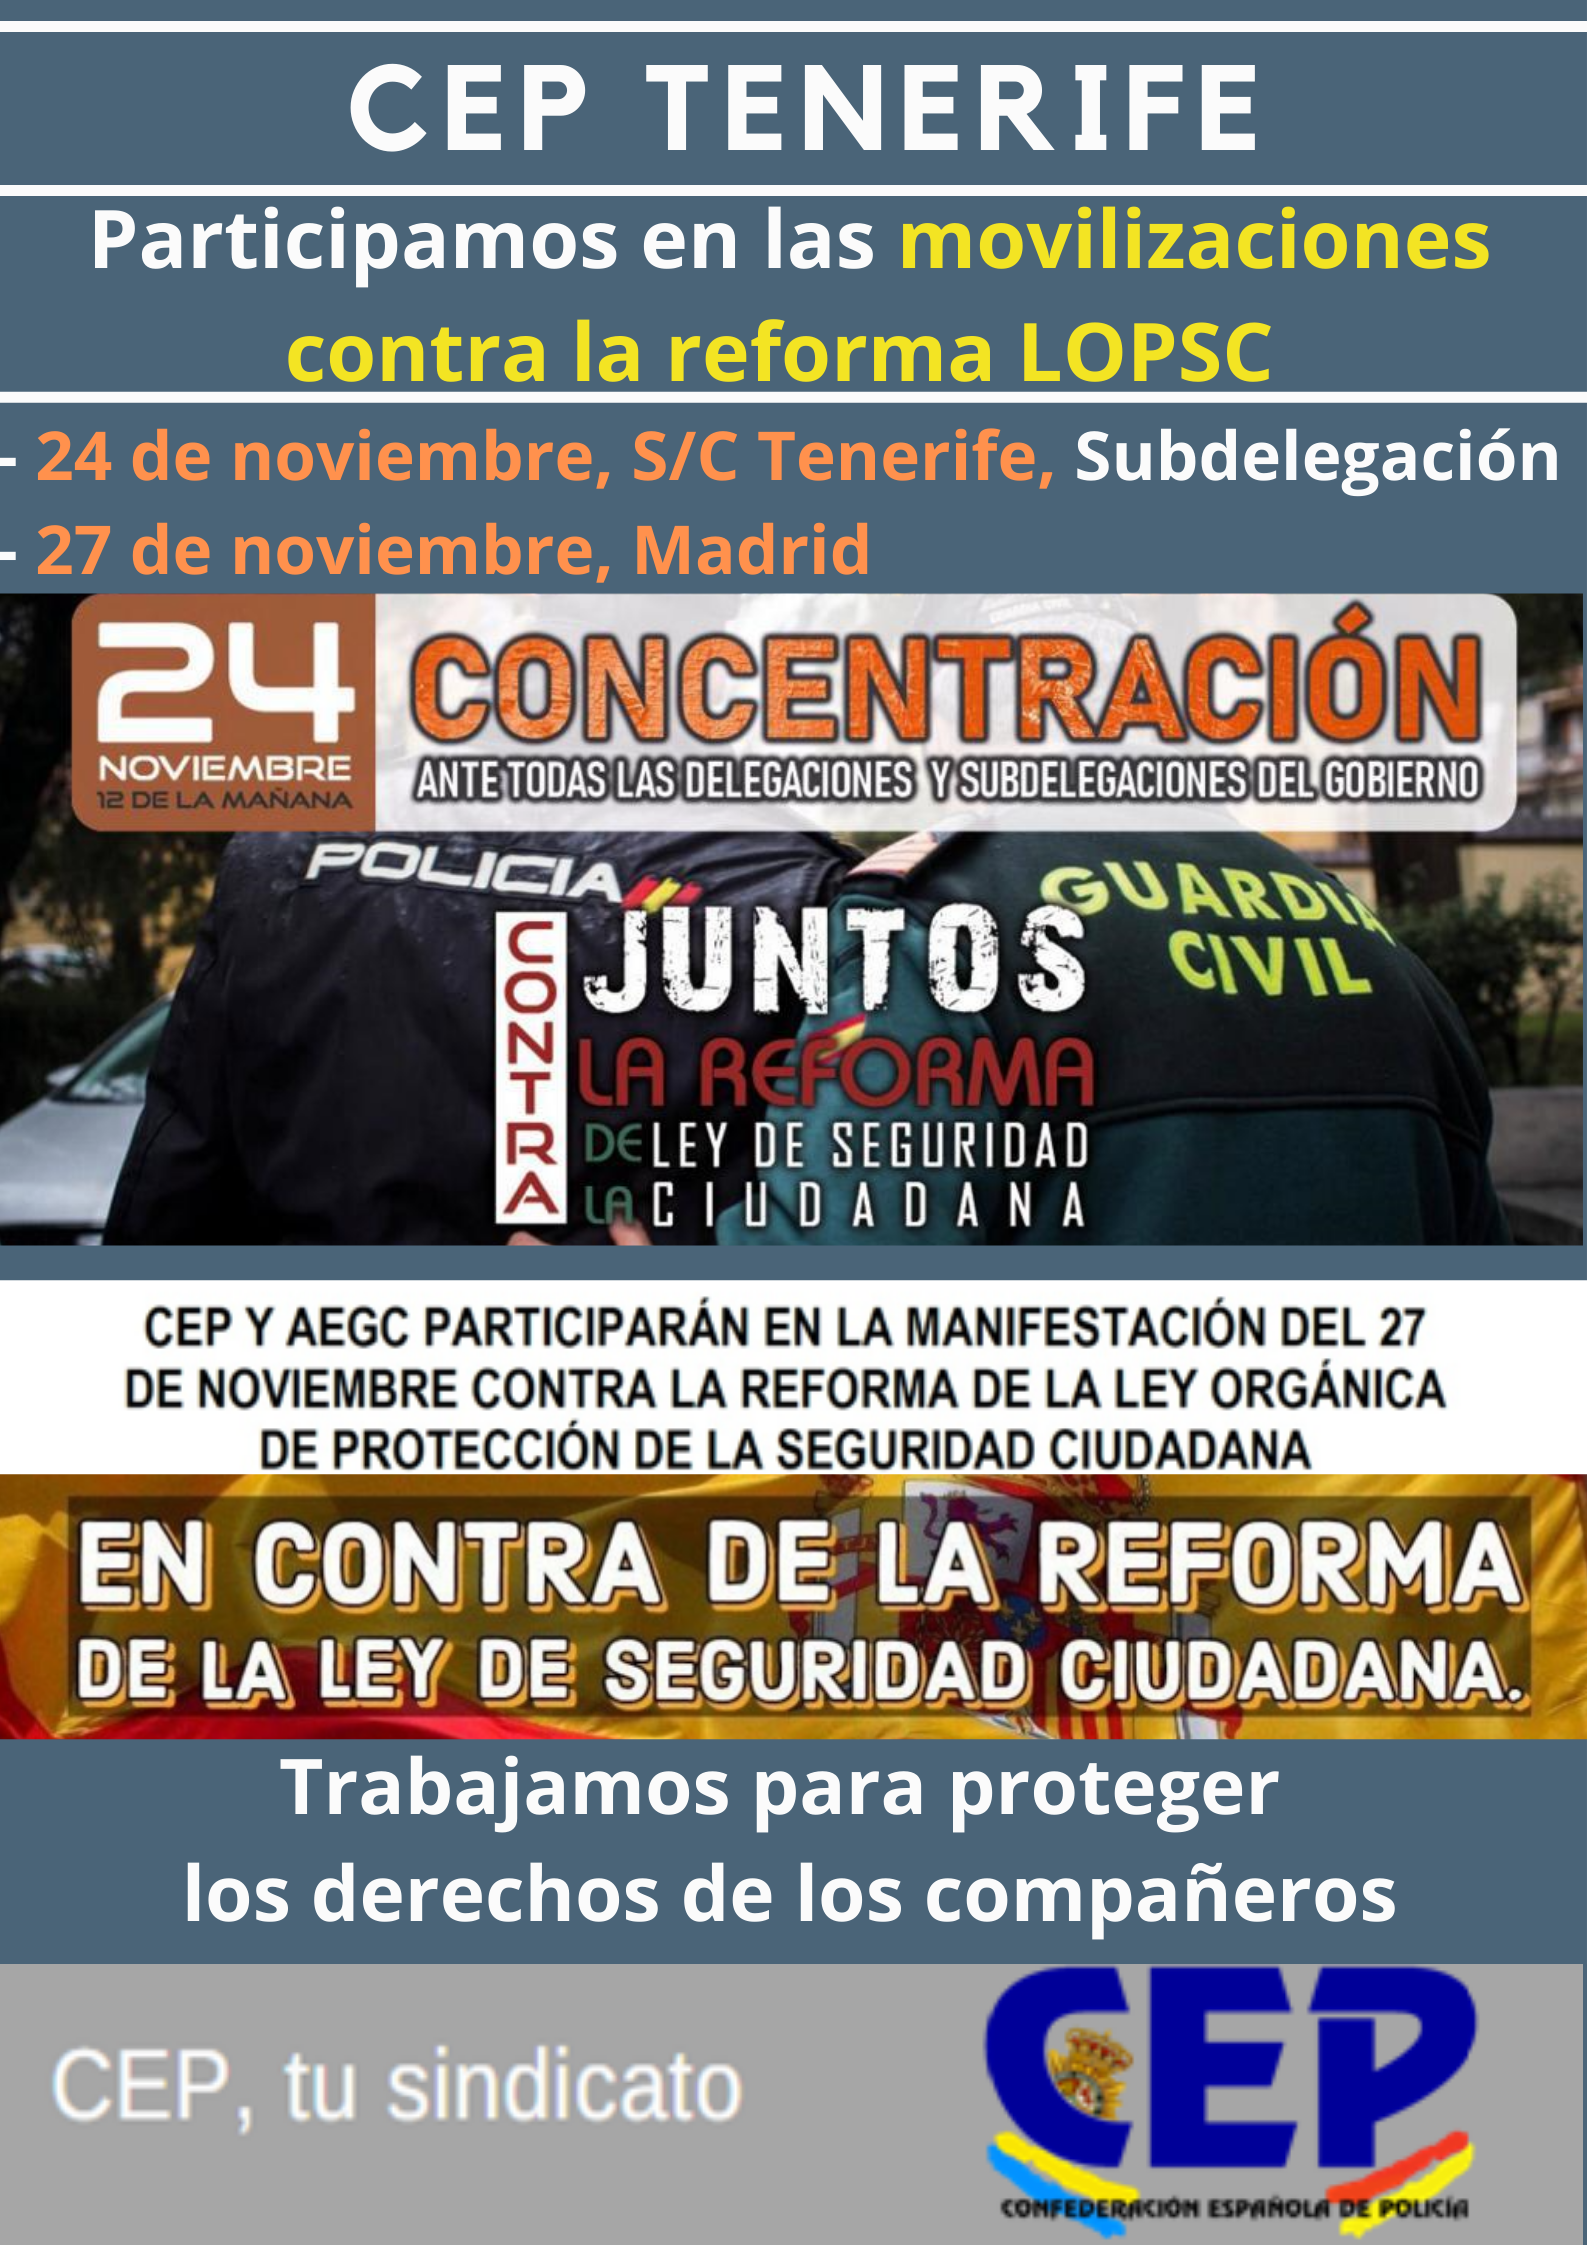 Participamos en movilizaciones contra reforma LOPSC - 24 Noviembre, Tenerife - 27 noviembre, Madrid.